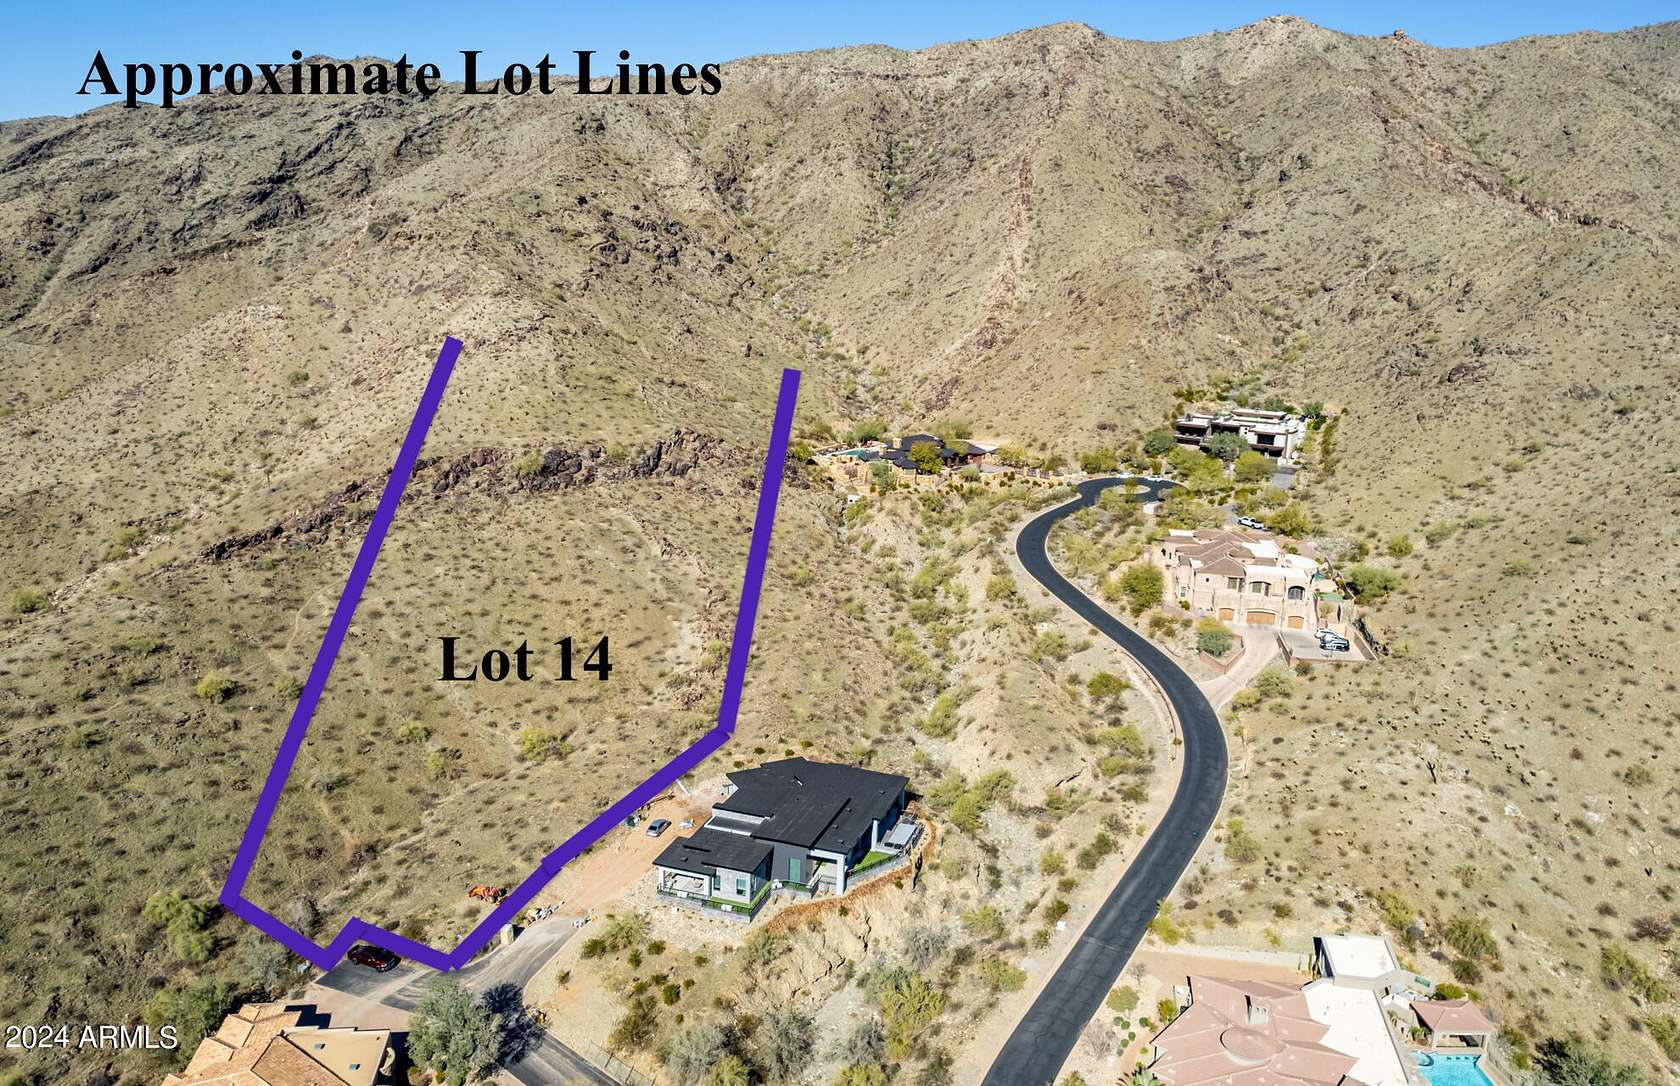 16.8 Acres of Land for Sale in Phoenix, Arizona